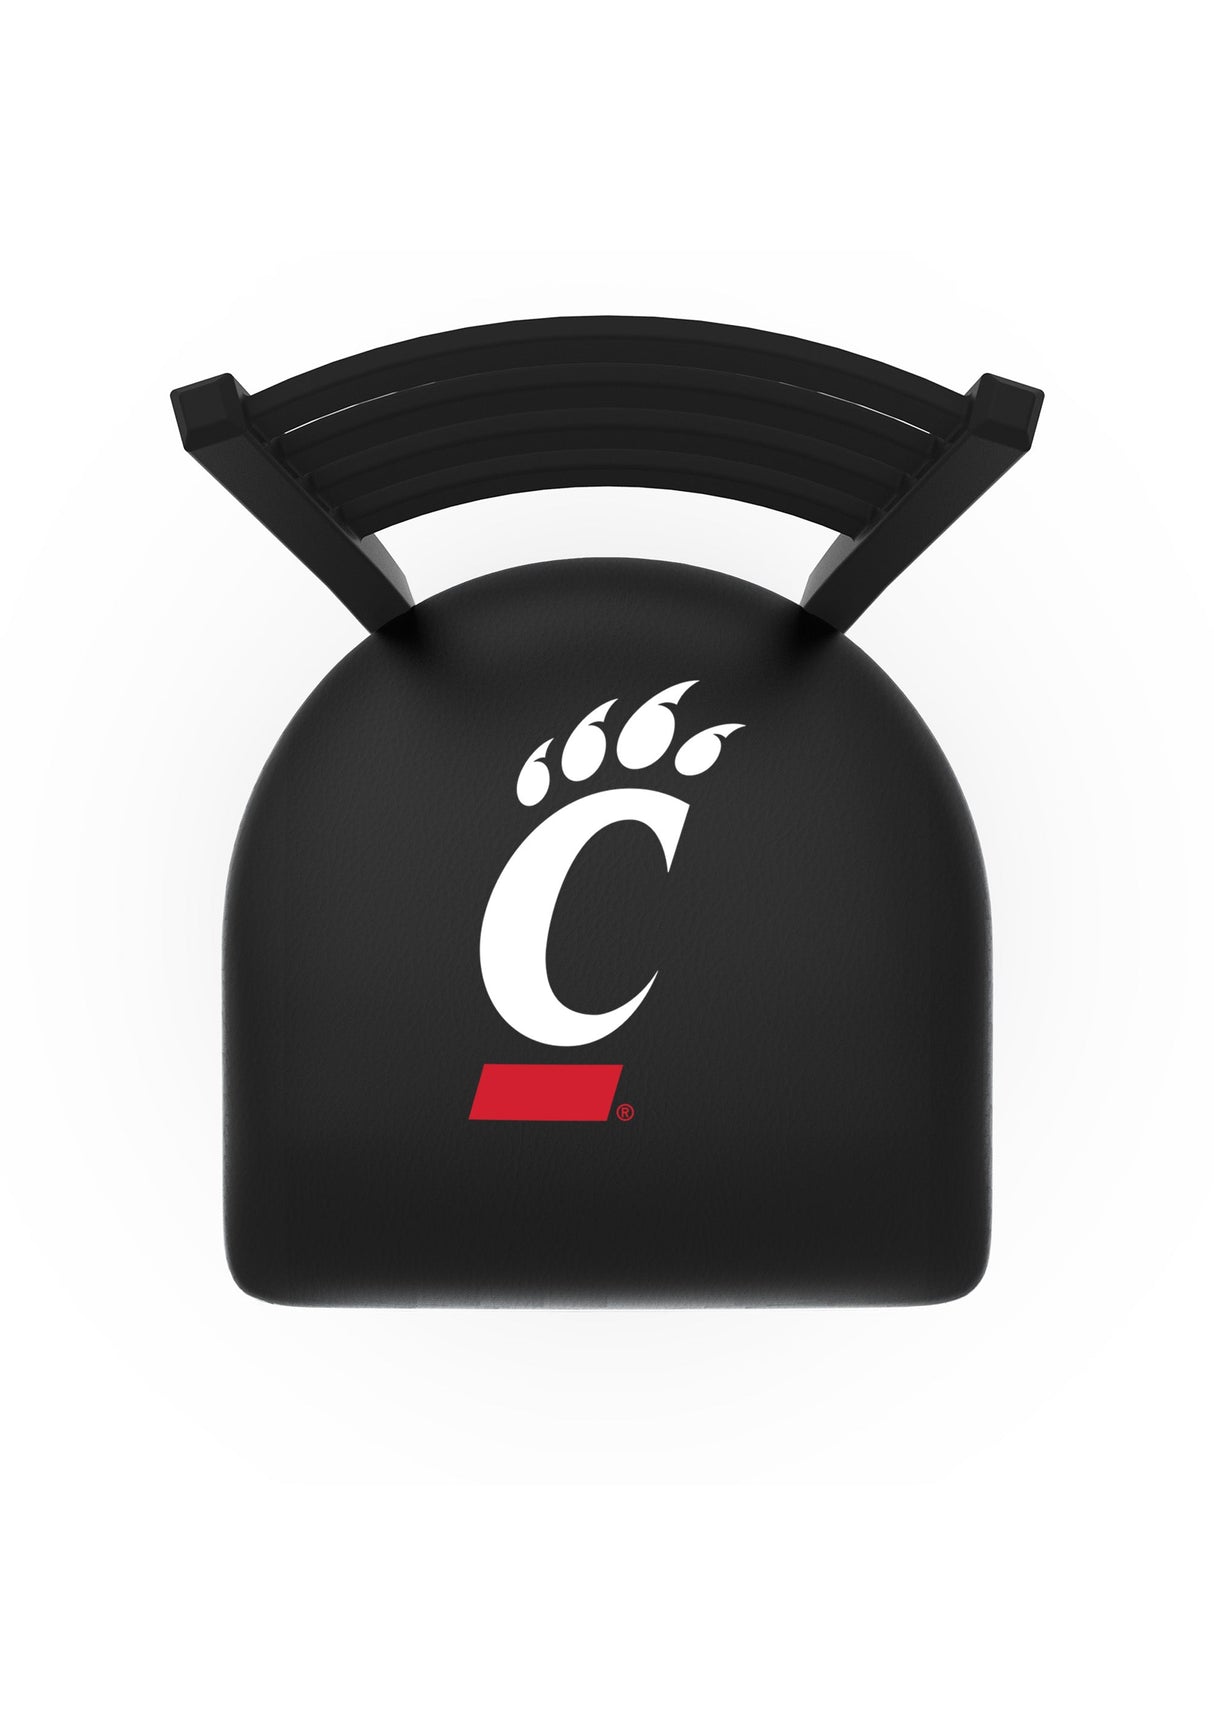 Cincinnati Bearcats L014 Bar Stool | NCAA Cincinnati Bear Cats Bar Stool